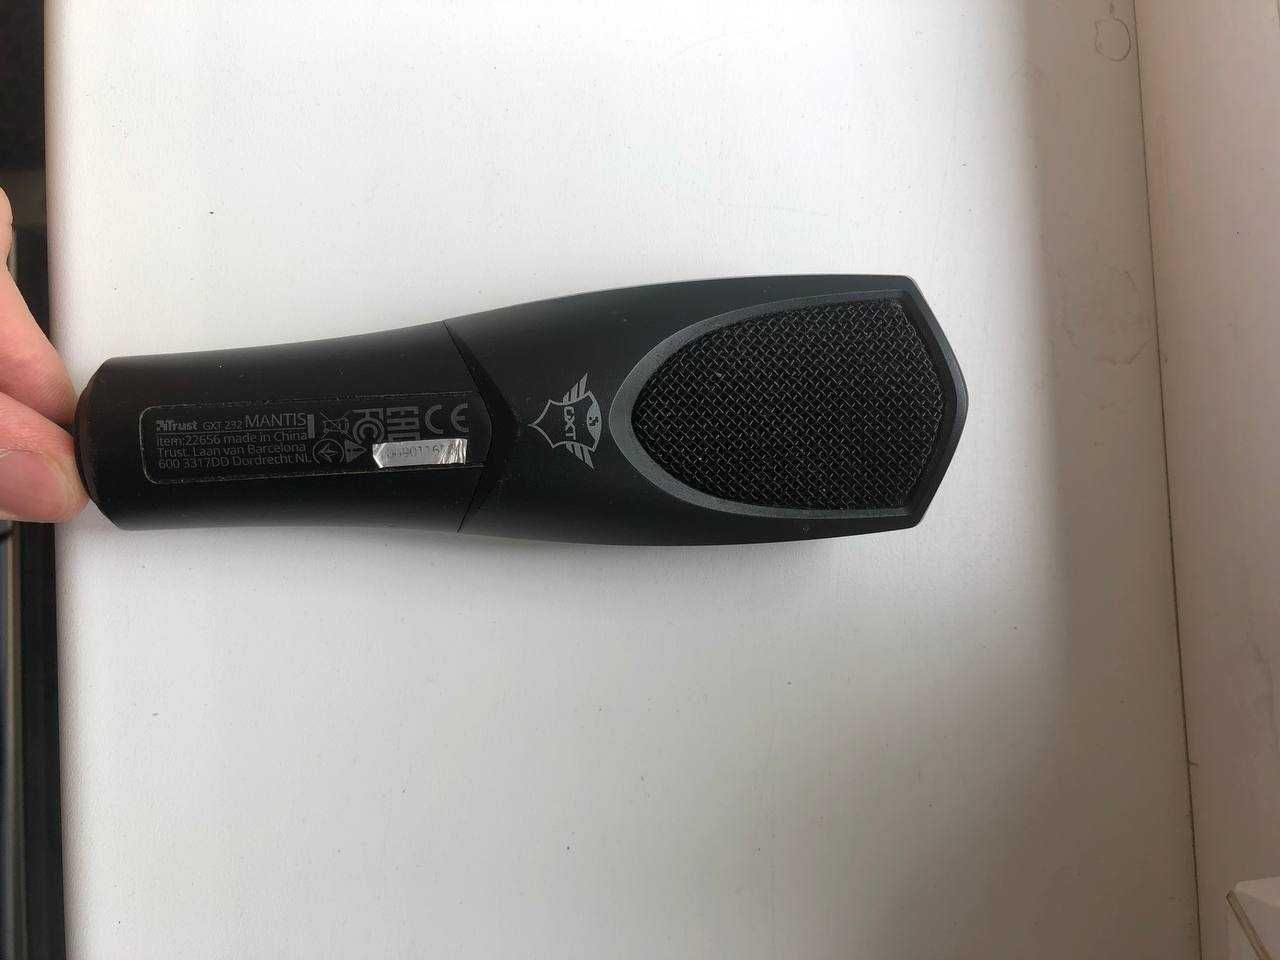 микрофон USB Микрофон Trust GXT 232 Mantis